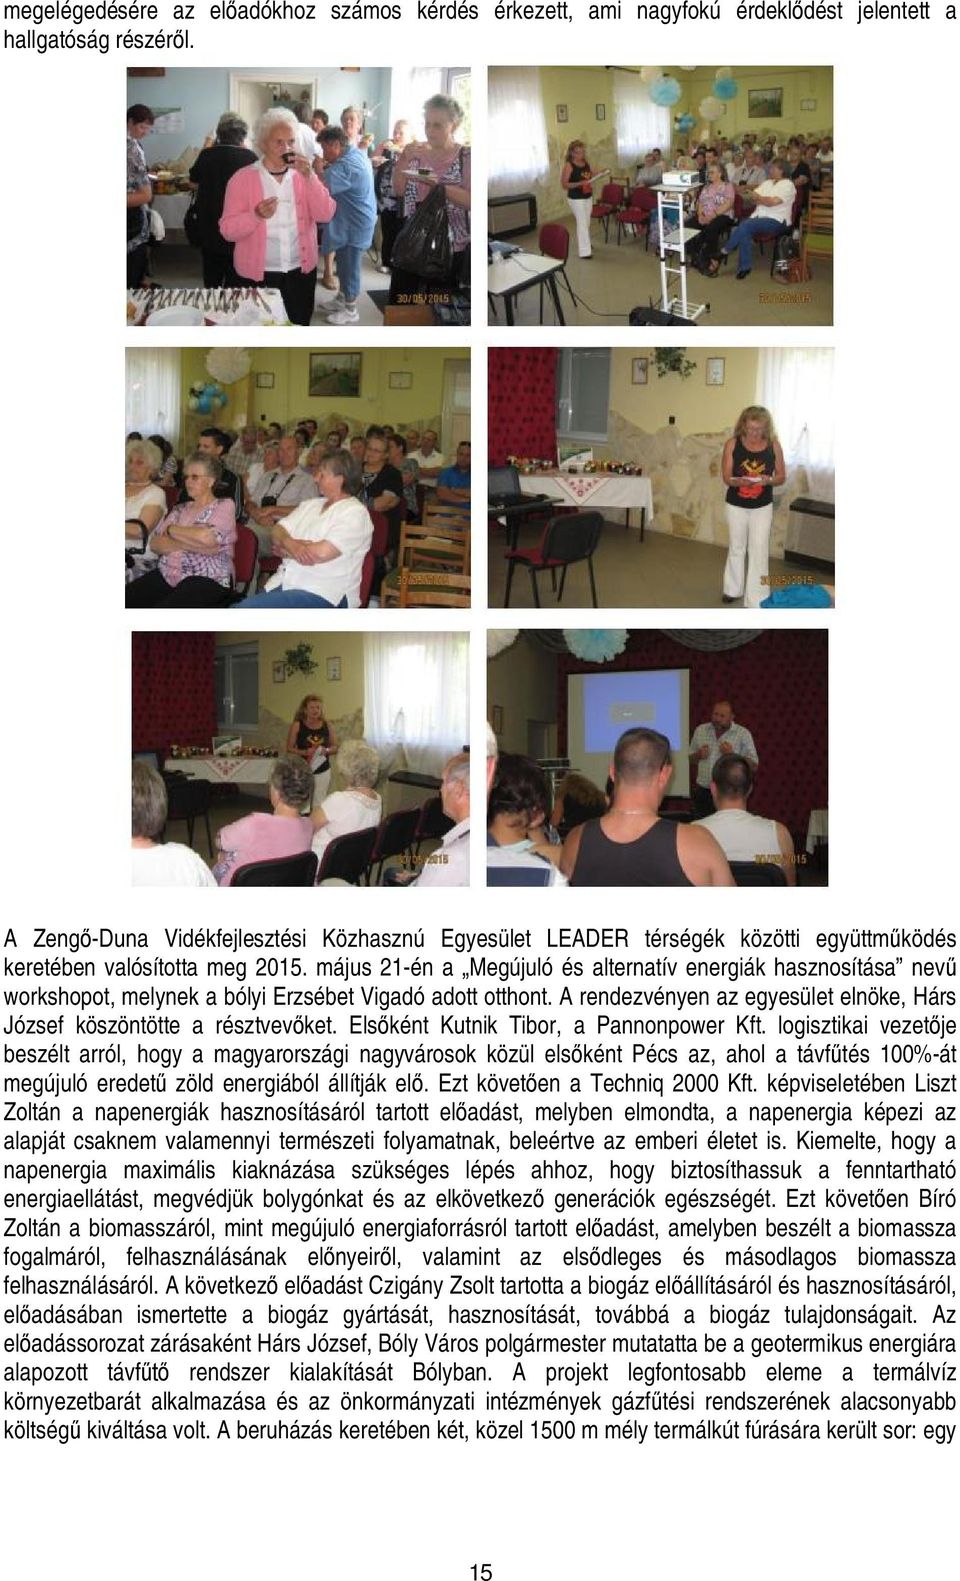 május 21-én a Megújuló és alternatív energiák hasznosítása nevű workshopot, melynek a bólyi Erzsébet Vigadó adott otthont. A rendezvényen az egyesület elnöke, Hárs József köszöntötte a résztvevőket.